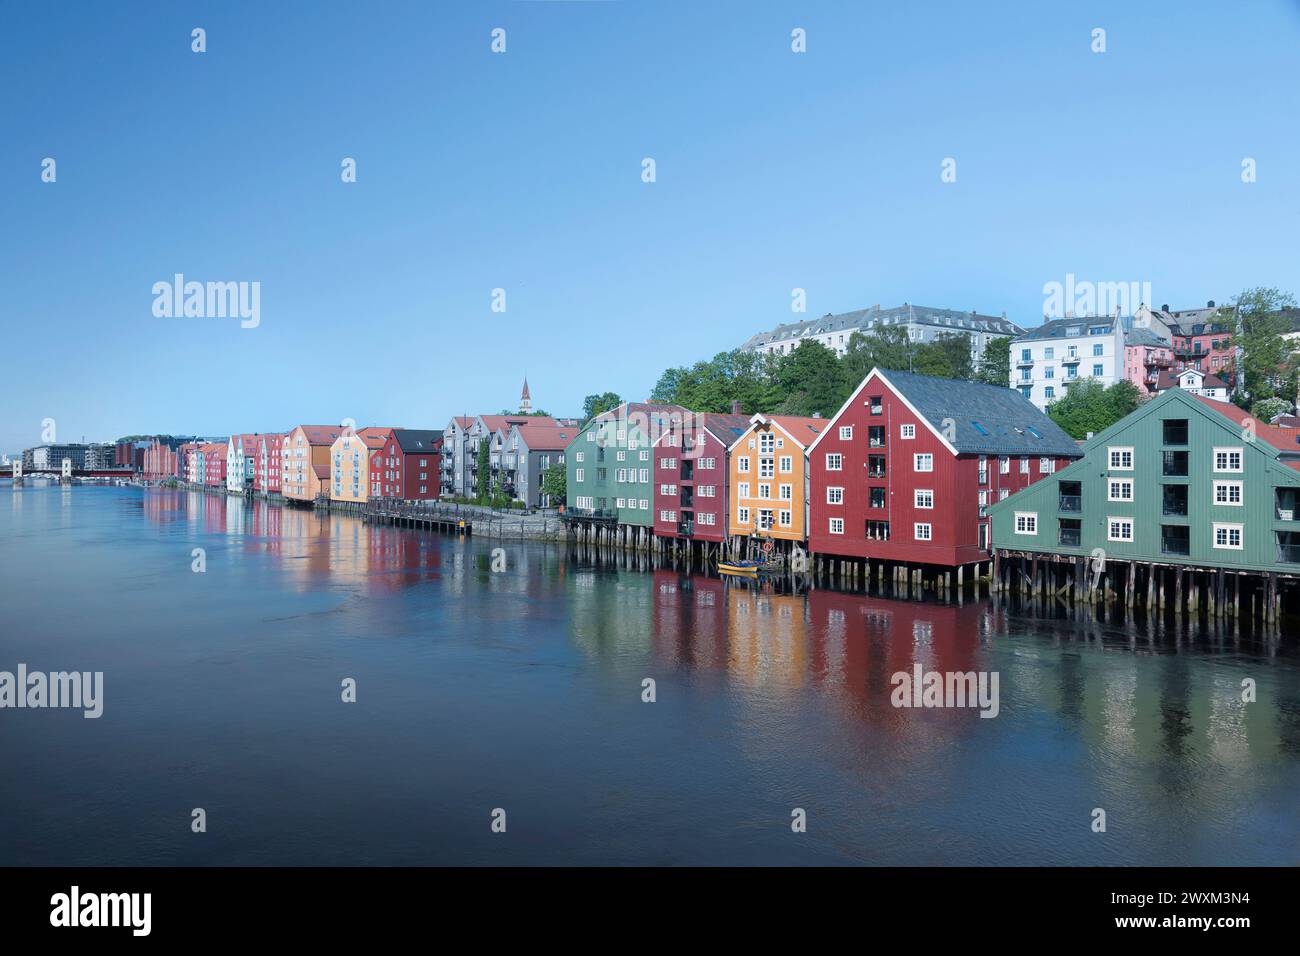 Maison colorée au bord de l'eau en Norvège Stockfoto